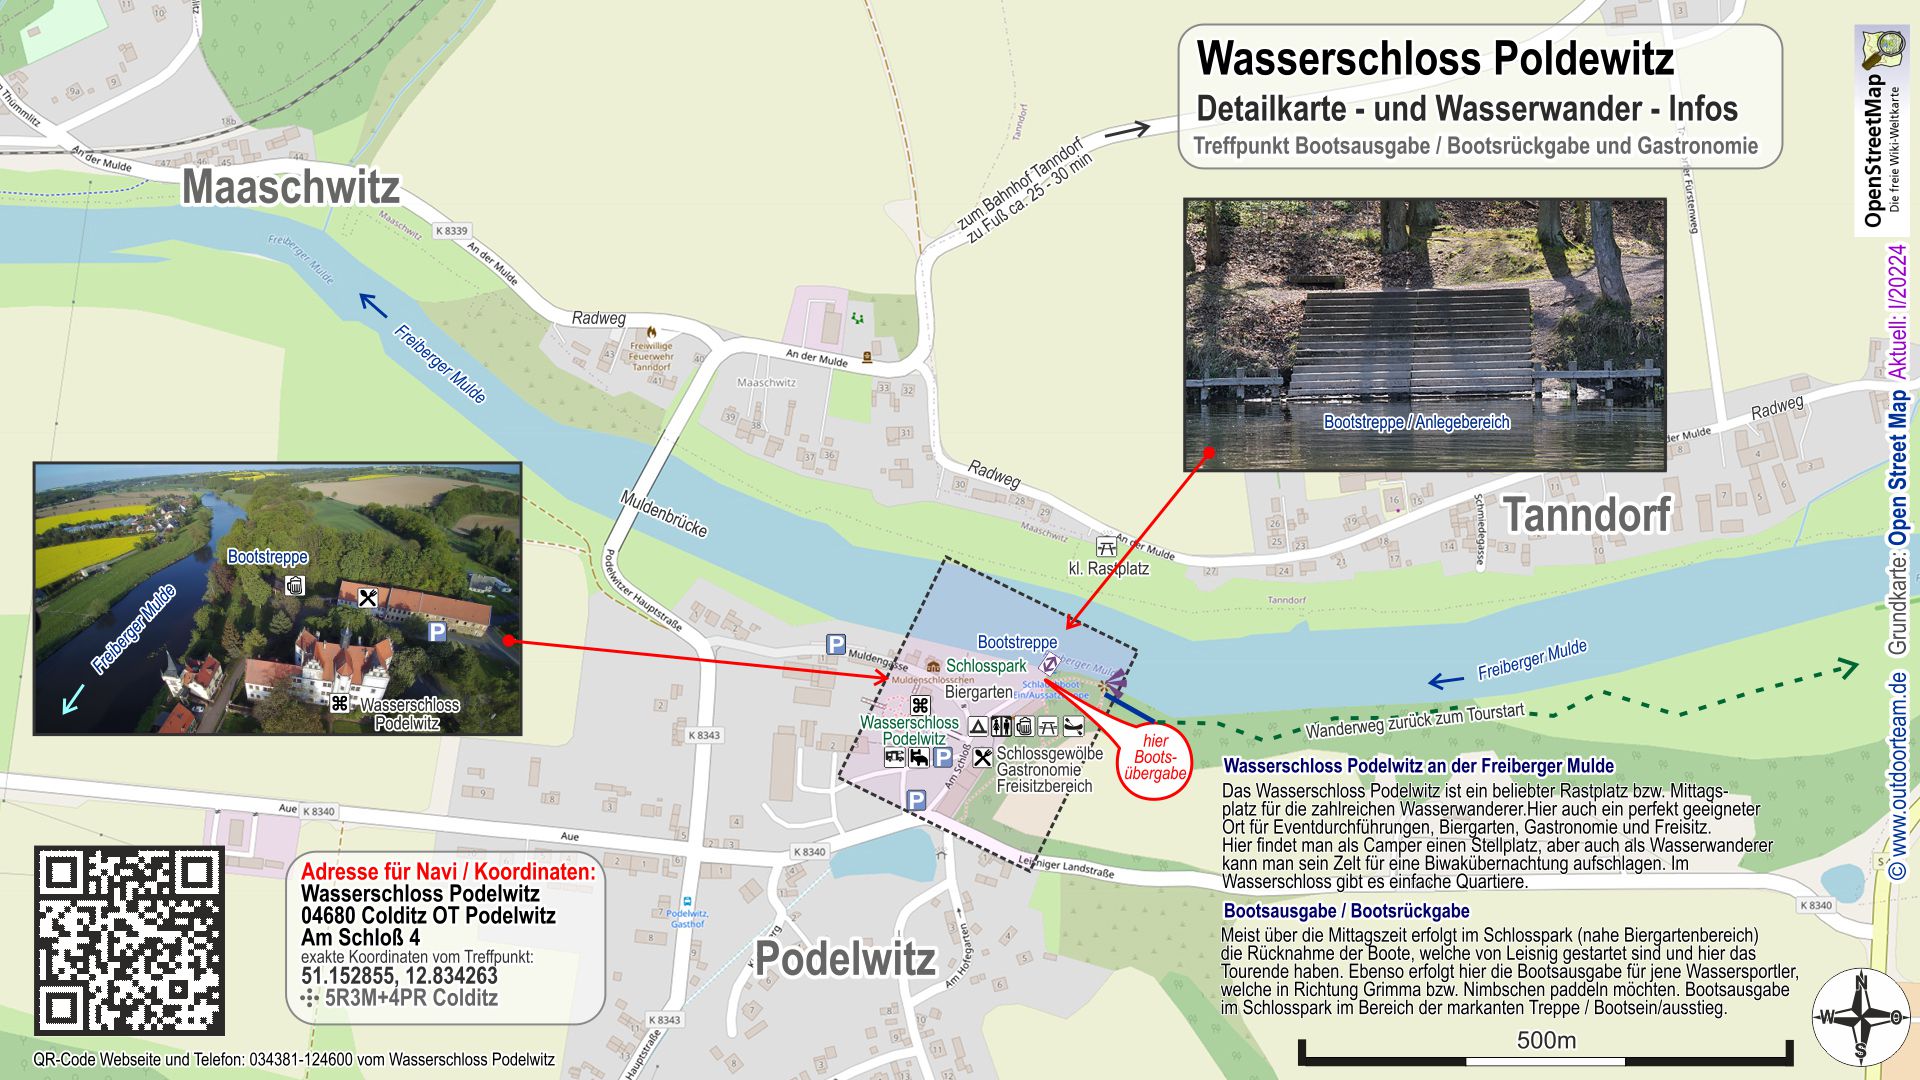 Karte Wasserschloss Podelwitz - Tourende 2 bei der verlängerten Strecke Schlauchboot-Grilltour